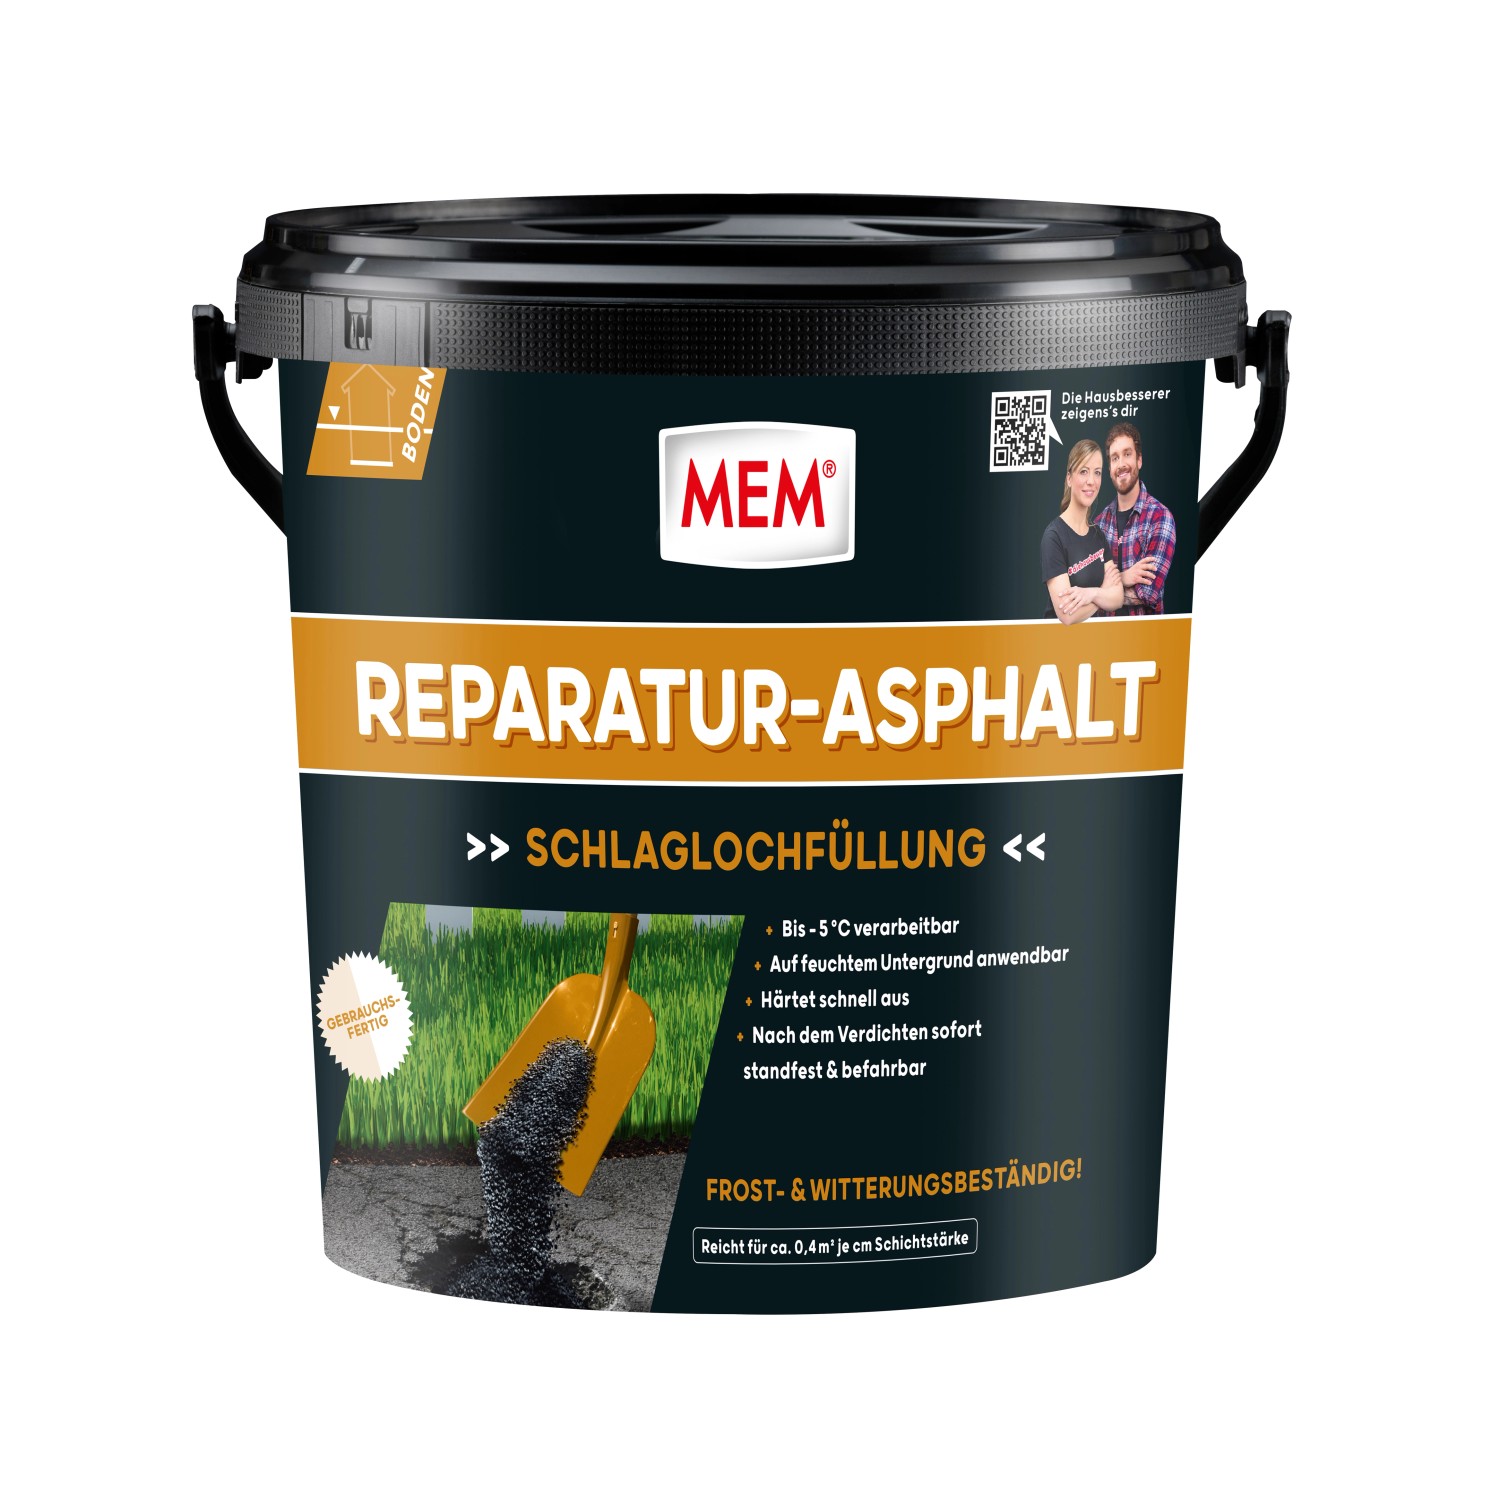 MEM Reparatur-Asphalt 10 kg